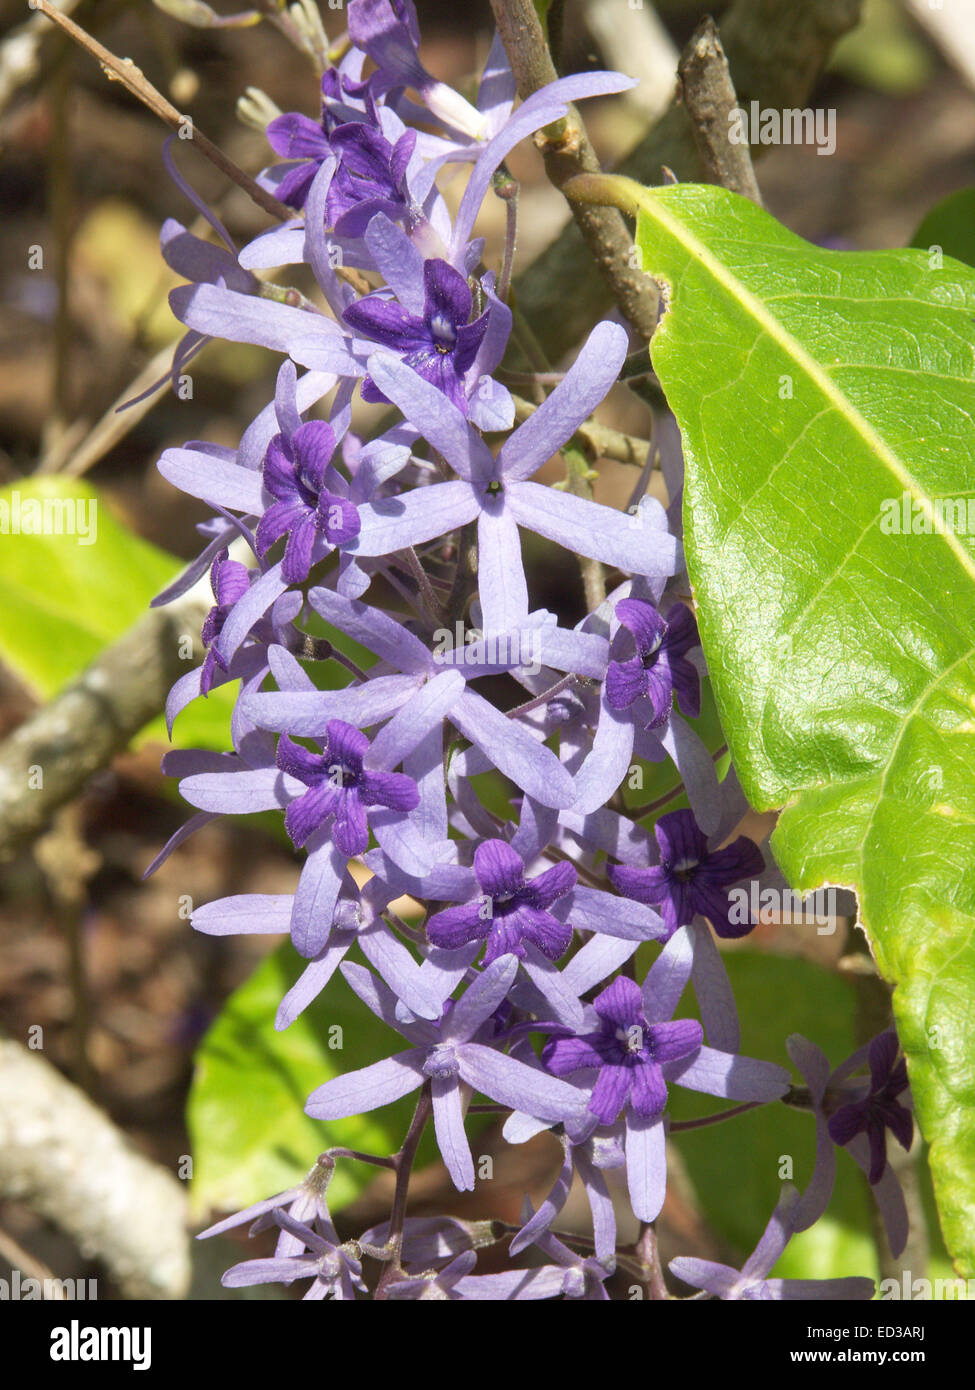 Langen Blütenstand von leuchtend violetten Blüten & lila Hochblätter der Kletterpflanze Petrea Volubilis, lila Kranz mit Smaragd grünen Blättern Stockfoto